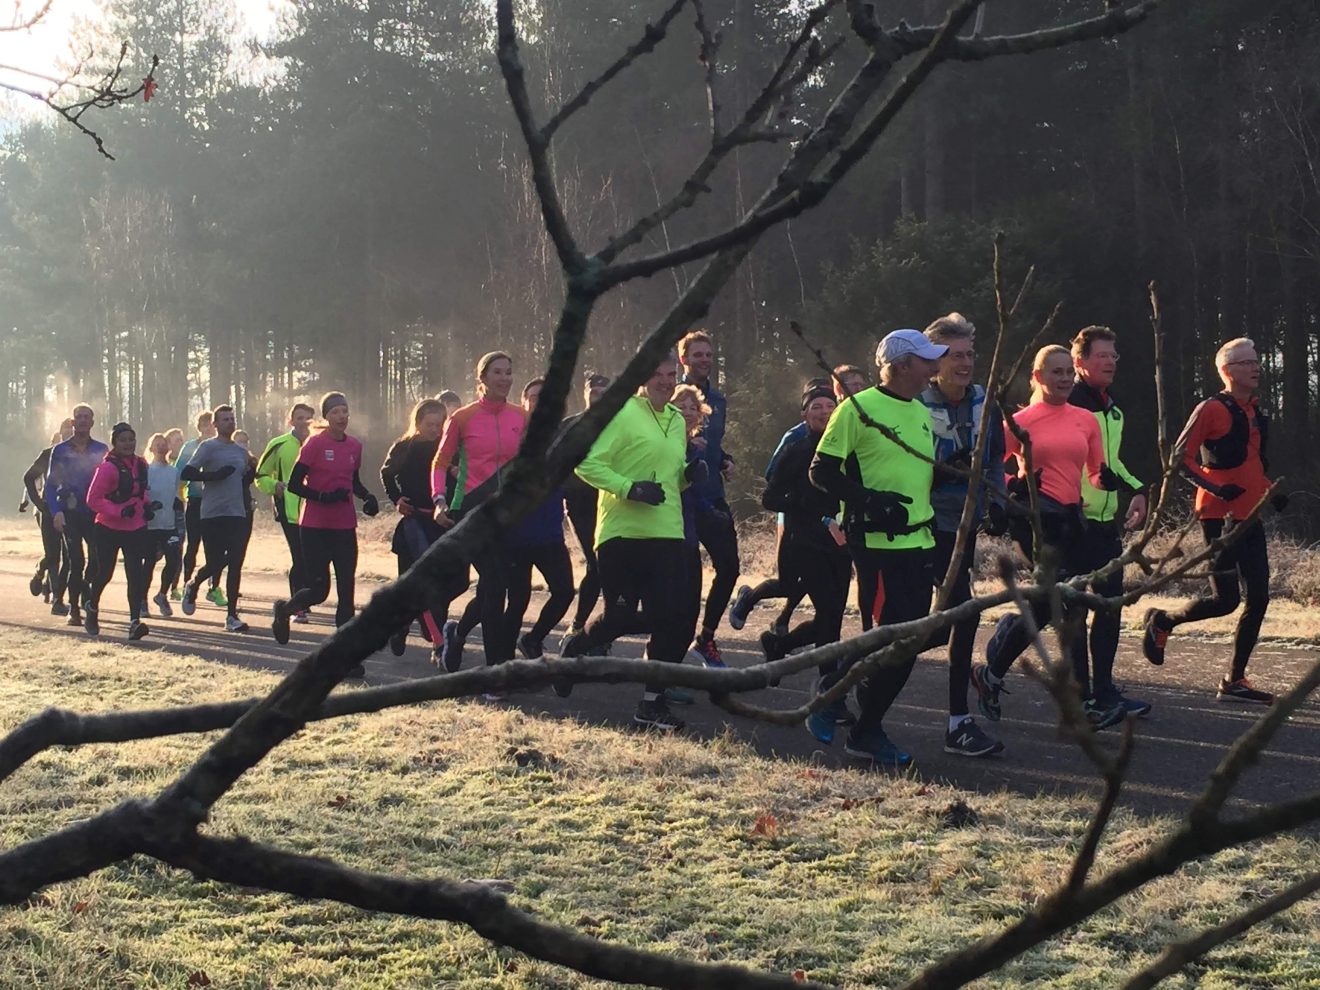 Twaalf weken samen trainen om een marathon te lopen in 2023